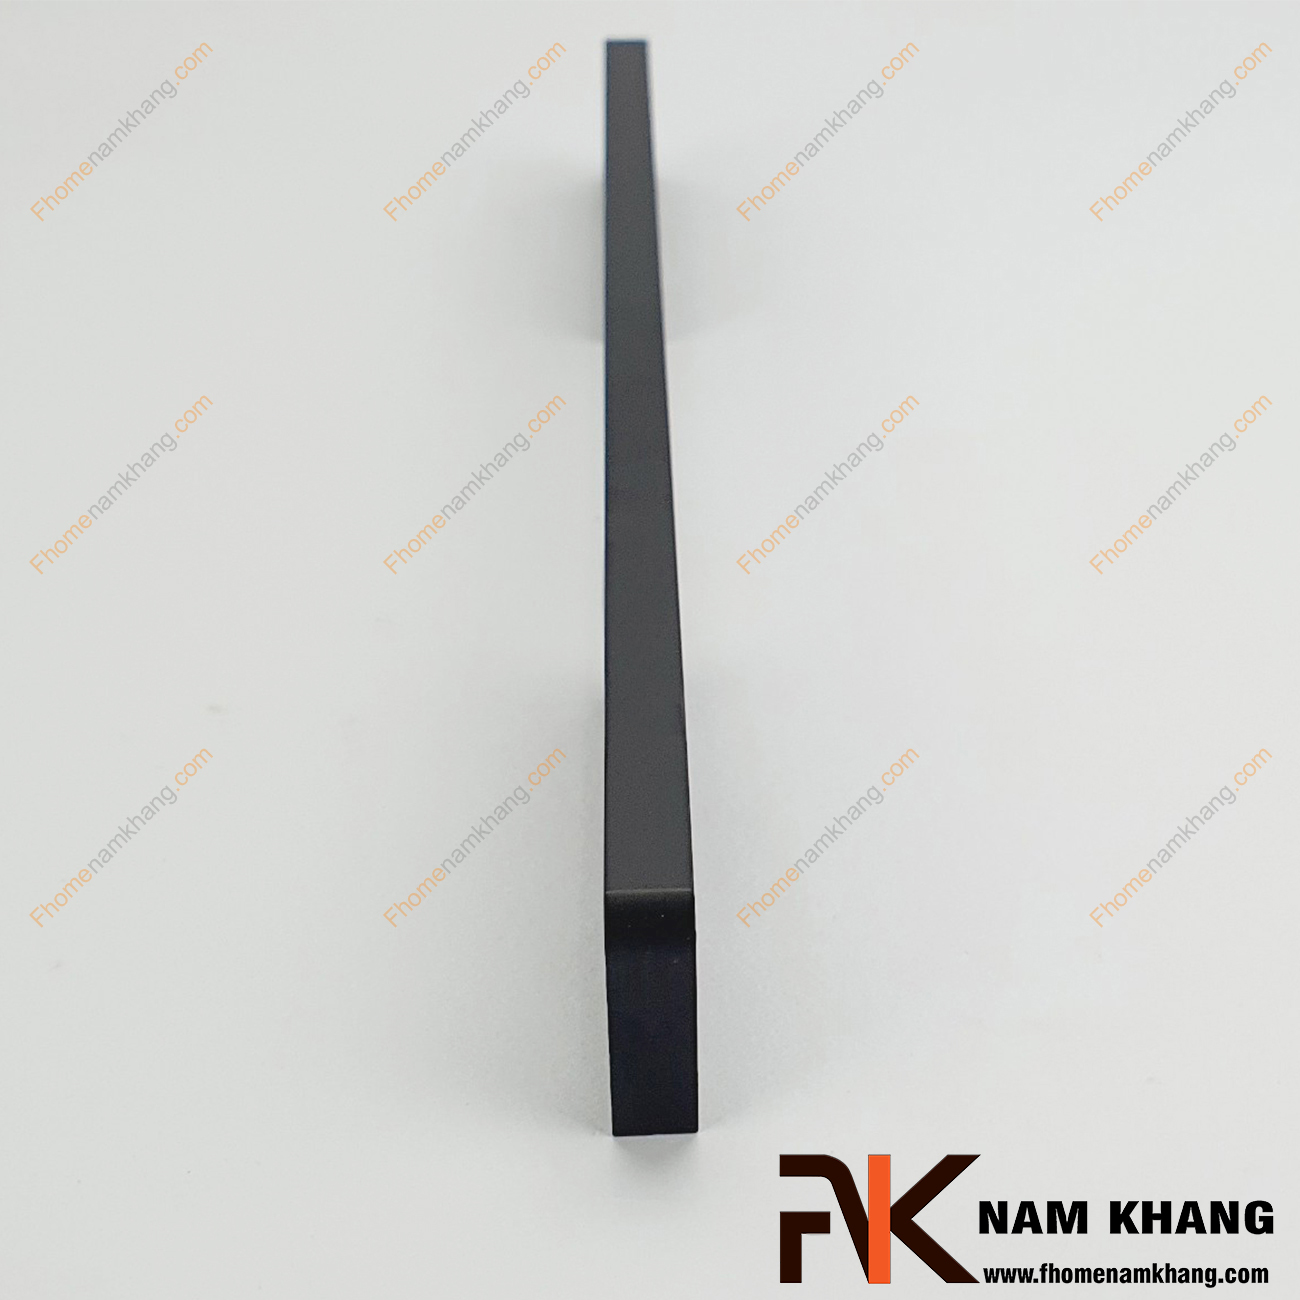 Tay nắm tủ dạng thanh màu đen mờ NK235L-D là một dòng tay nắm tủ theo bộ với nhiều kích thước được sử dụng trên một hoặc nhiều loại phong cách tủ khác nhau tùy nhu cầu thiết kế.